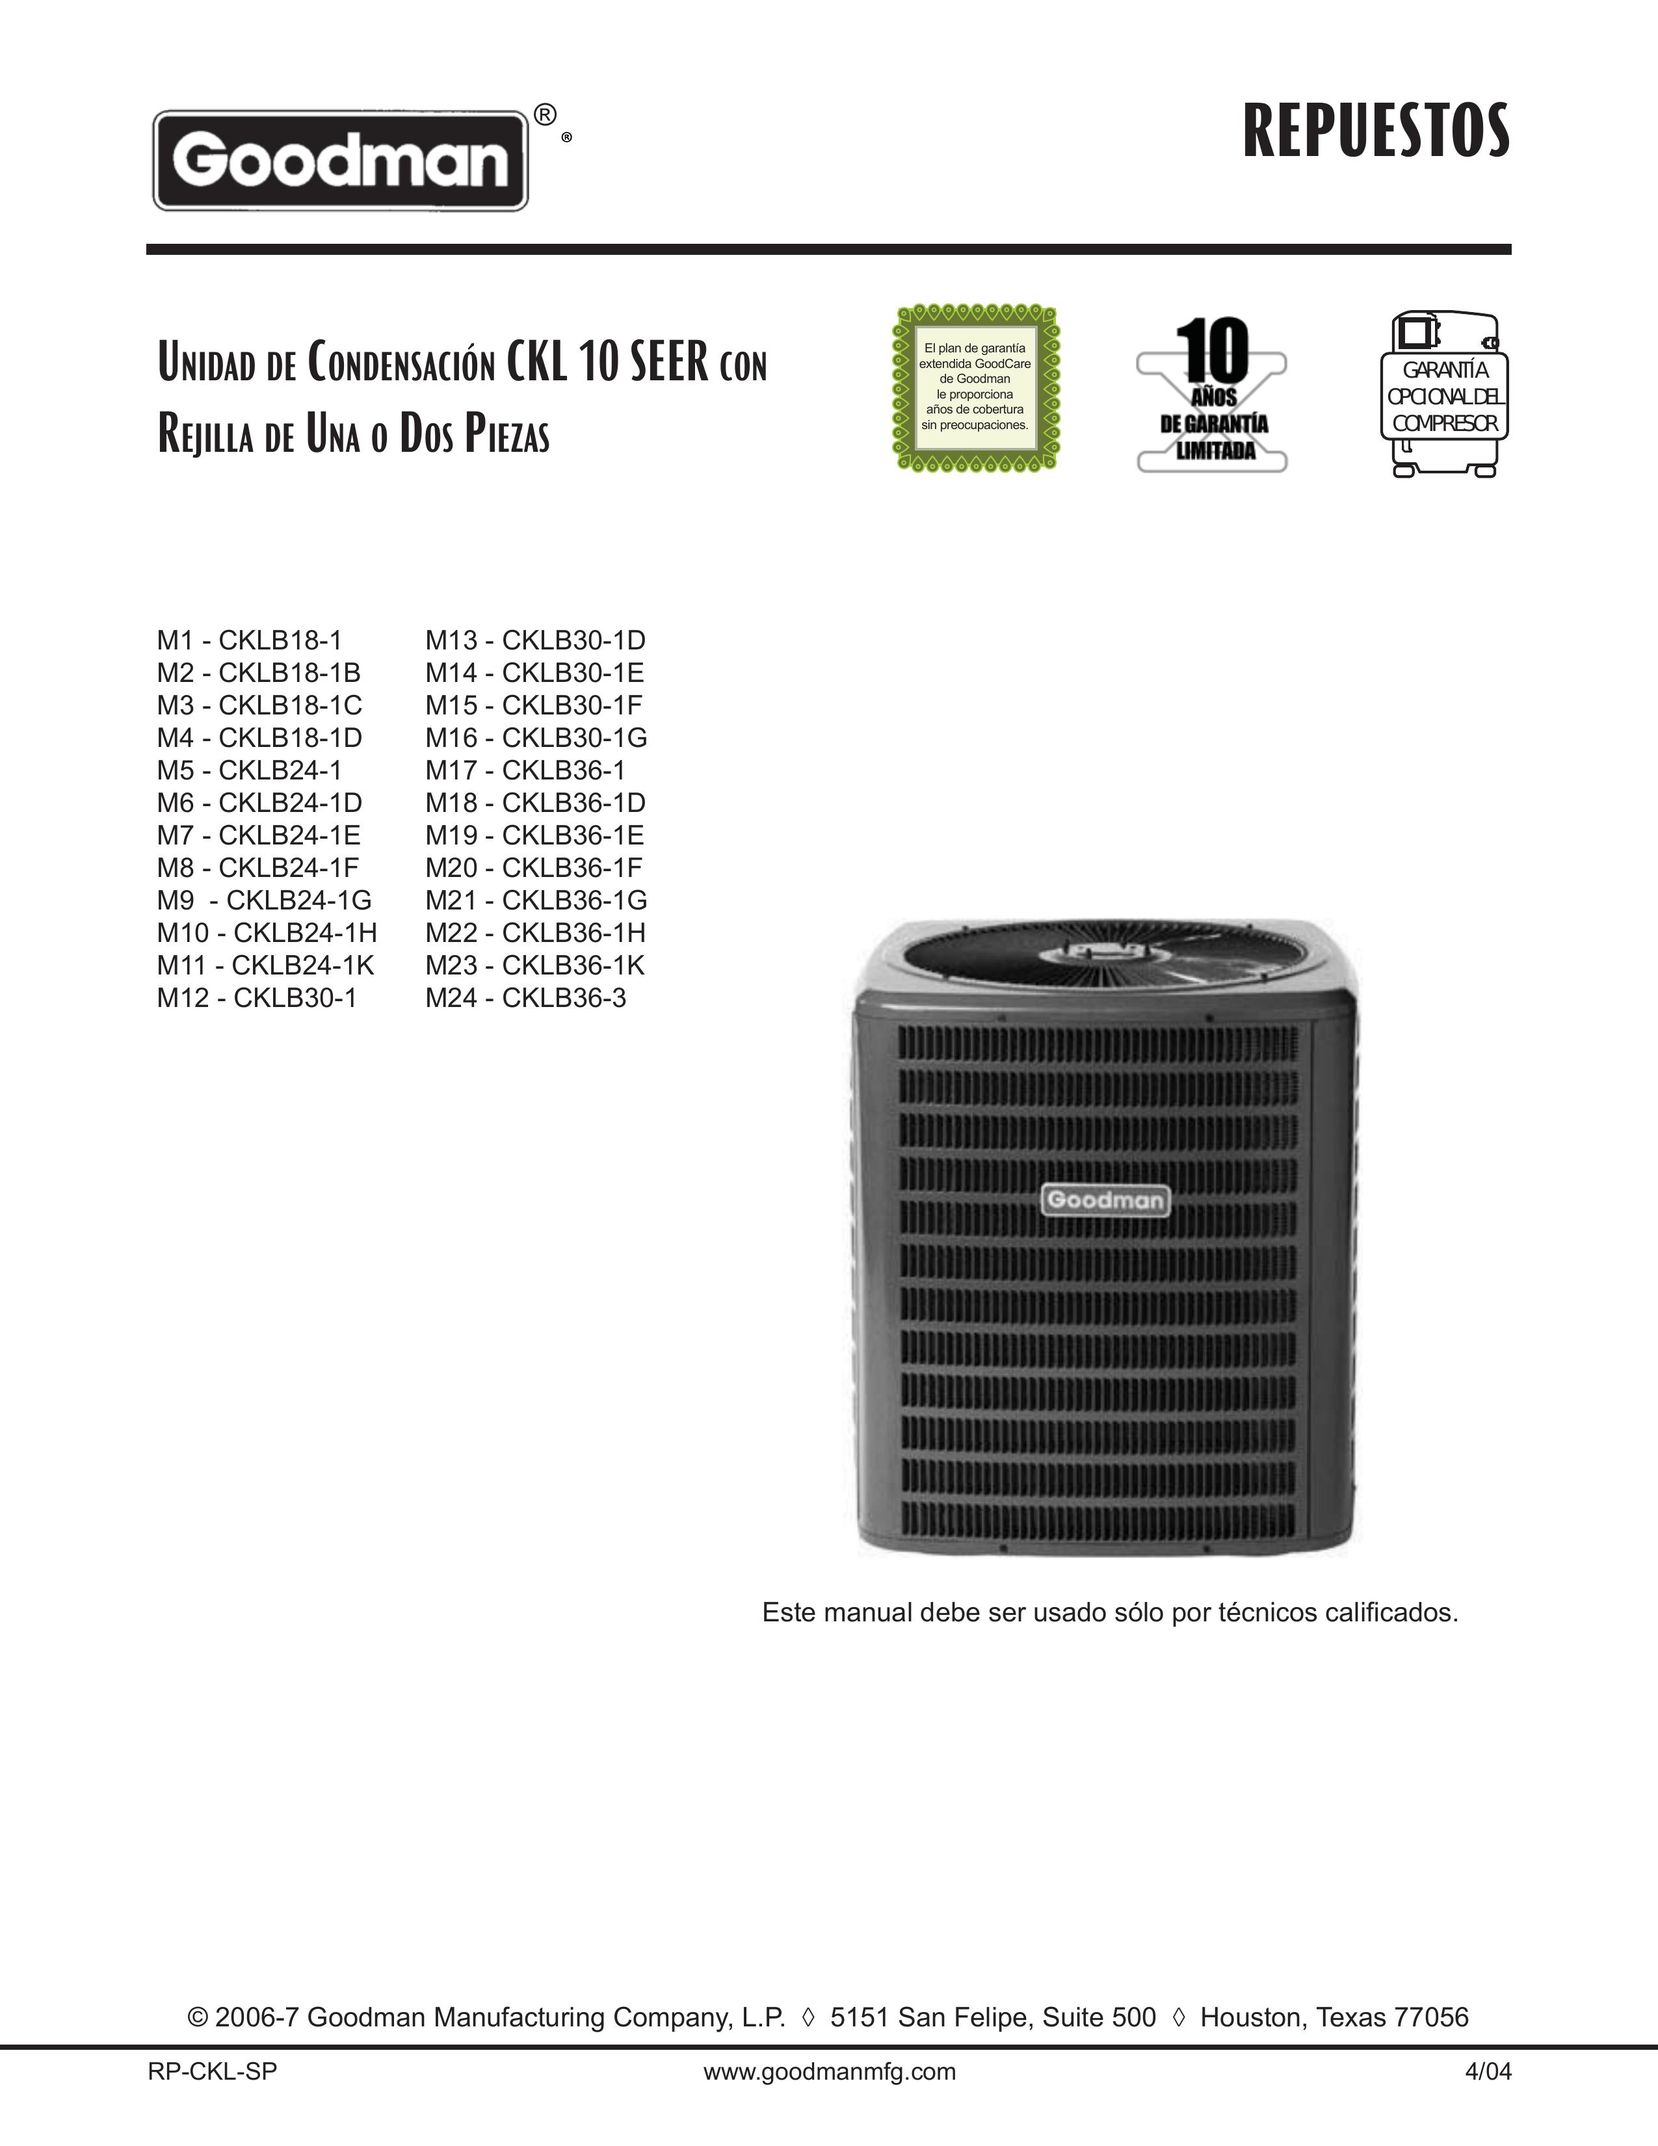 Goodman Mfg CKLB30-1E Air Conditioner User Manual